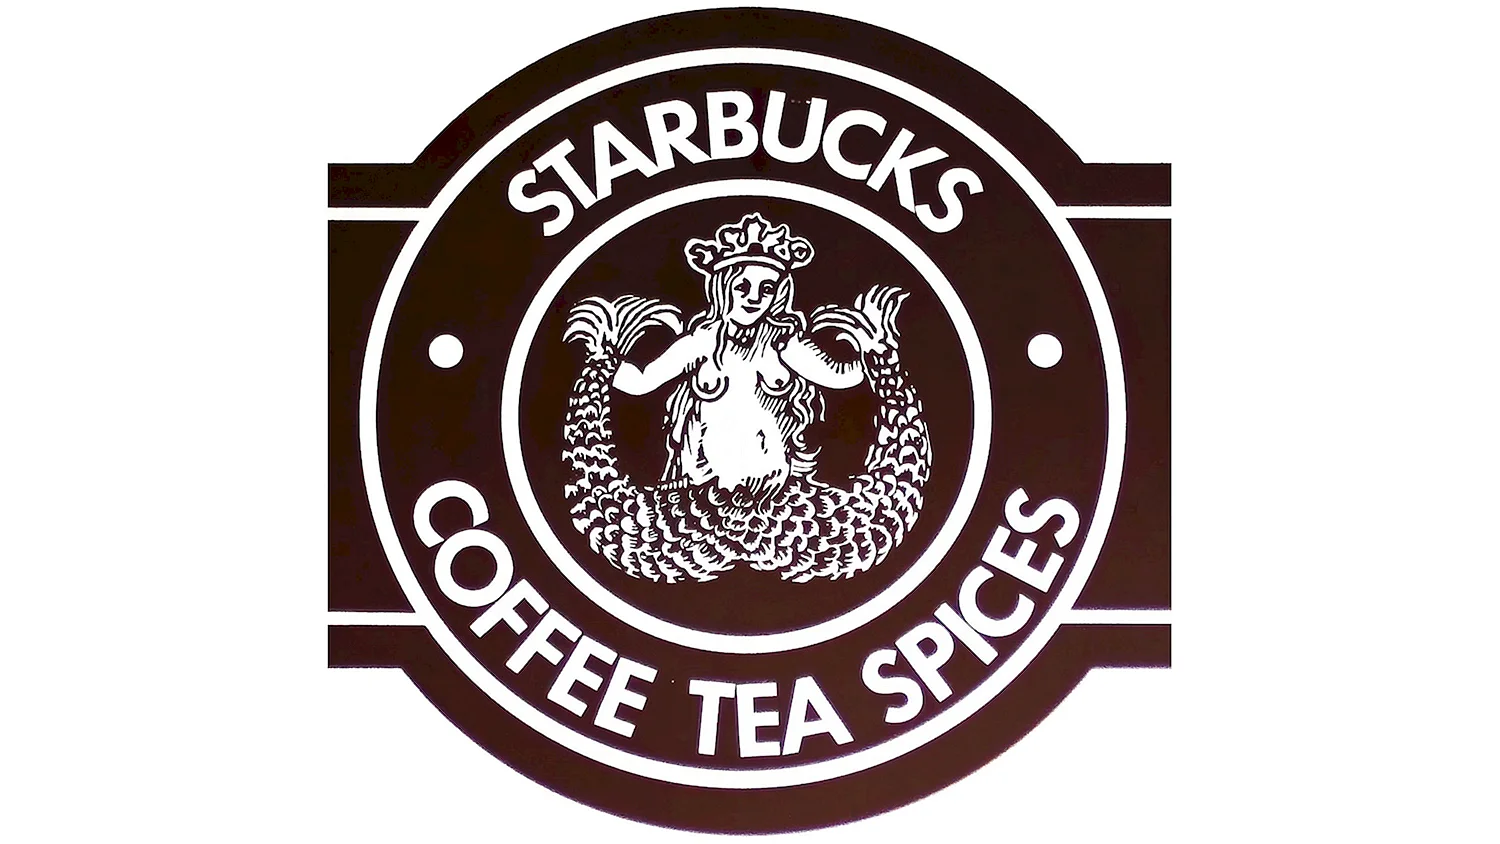 Логотип Старбакс 1971